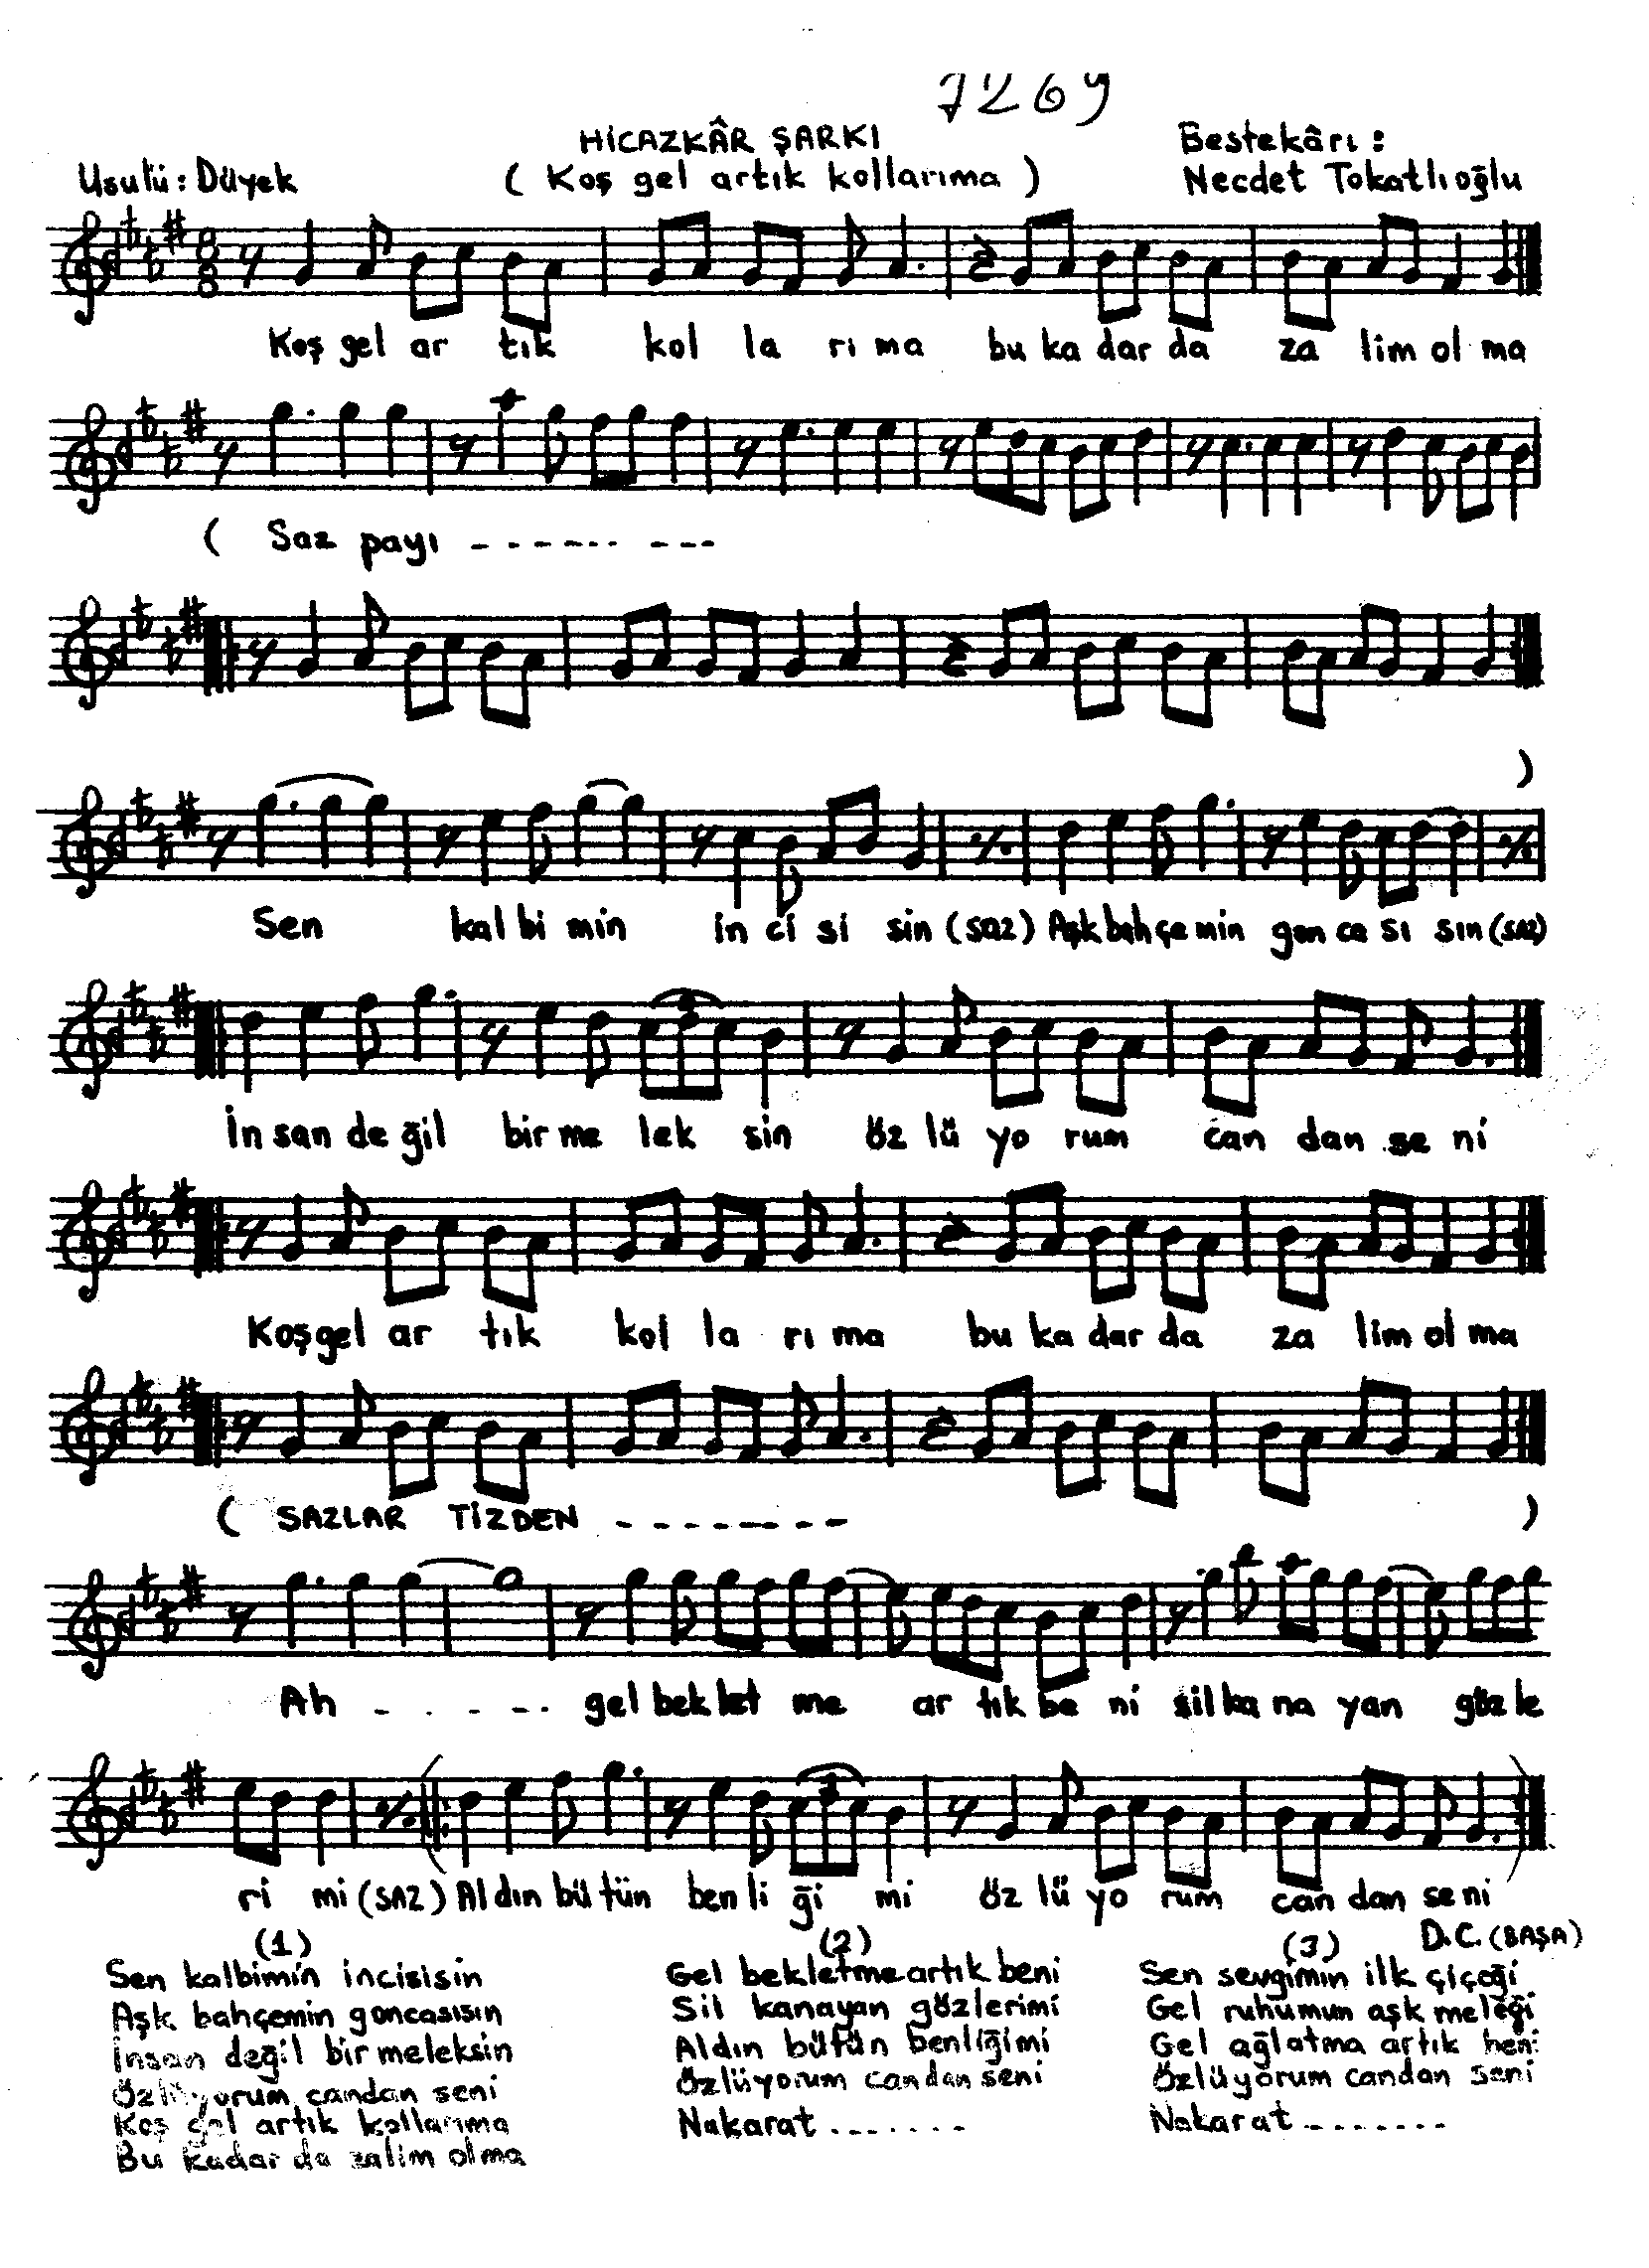 Hicâzkâr - Şarkı - Necdet Tokatlıoğlu - Sayfa 1